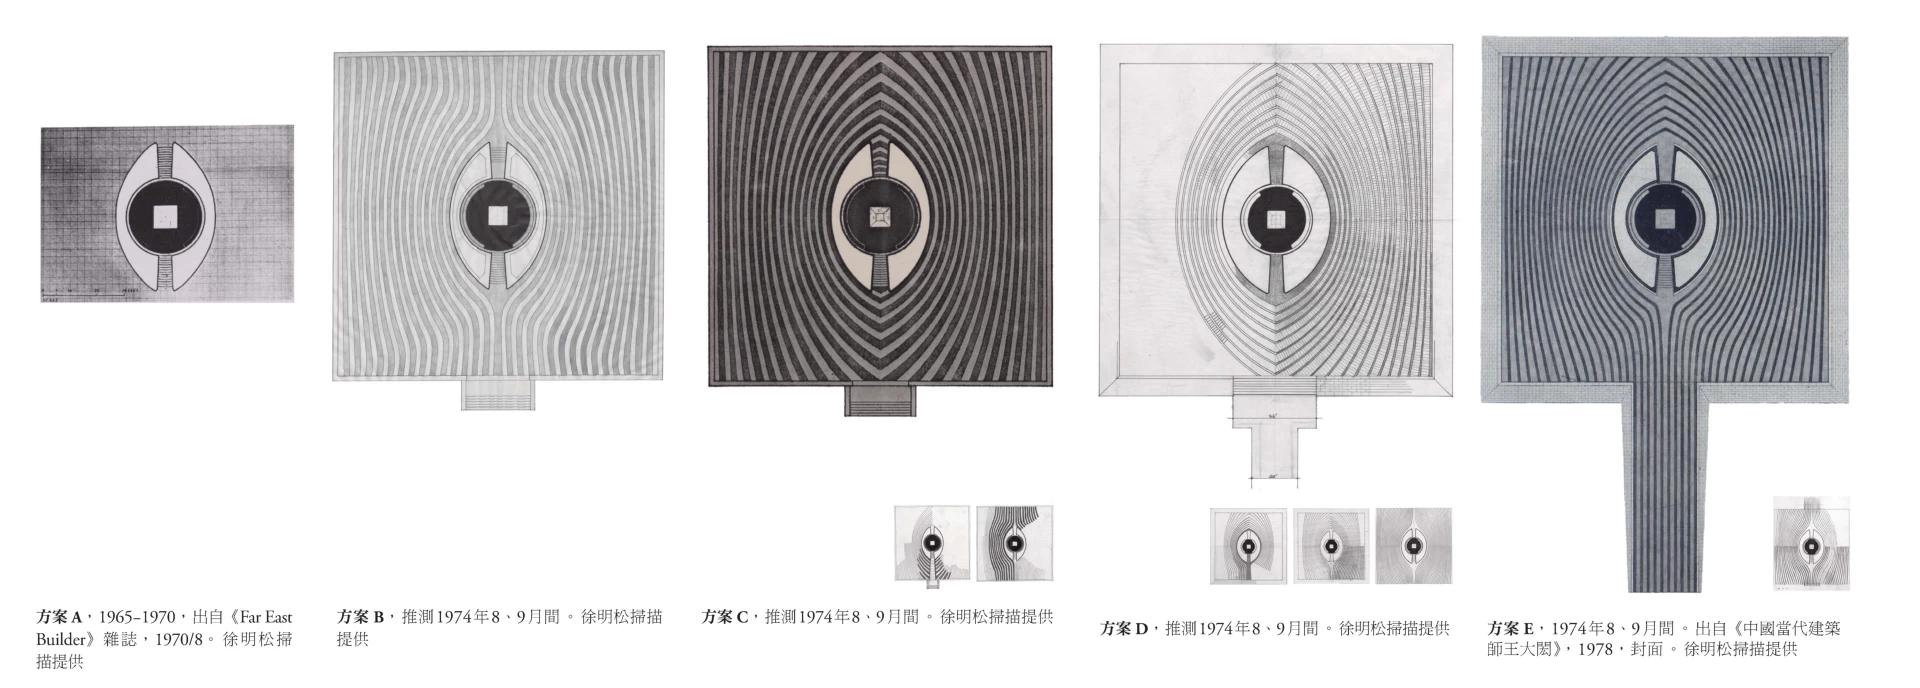 由左至右─登月紀念碑，基座與紋飾設計演變圖。方案A，1965-1970，出自《Far East Builder》雜誌，1970/8。徐明松掃描提供 / 方案B，推測1974年8、9月間。徐明松掃描提供 / 方案C，推測1974年8、9月間。徐明松掃描提供 / 方案D，推測1974年8、9月間。徐明松掃描提供 / 方案E，1974年8、9月間。出自《中國當代建築師王大閎》，1978，封面。徐明松掃描提供-圖片